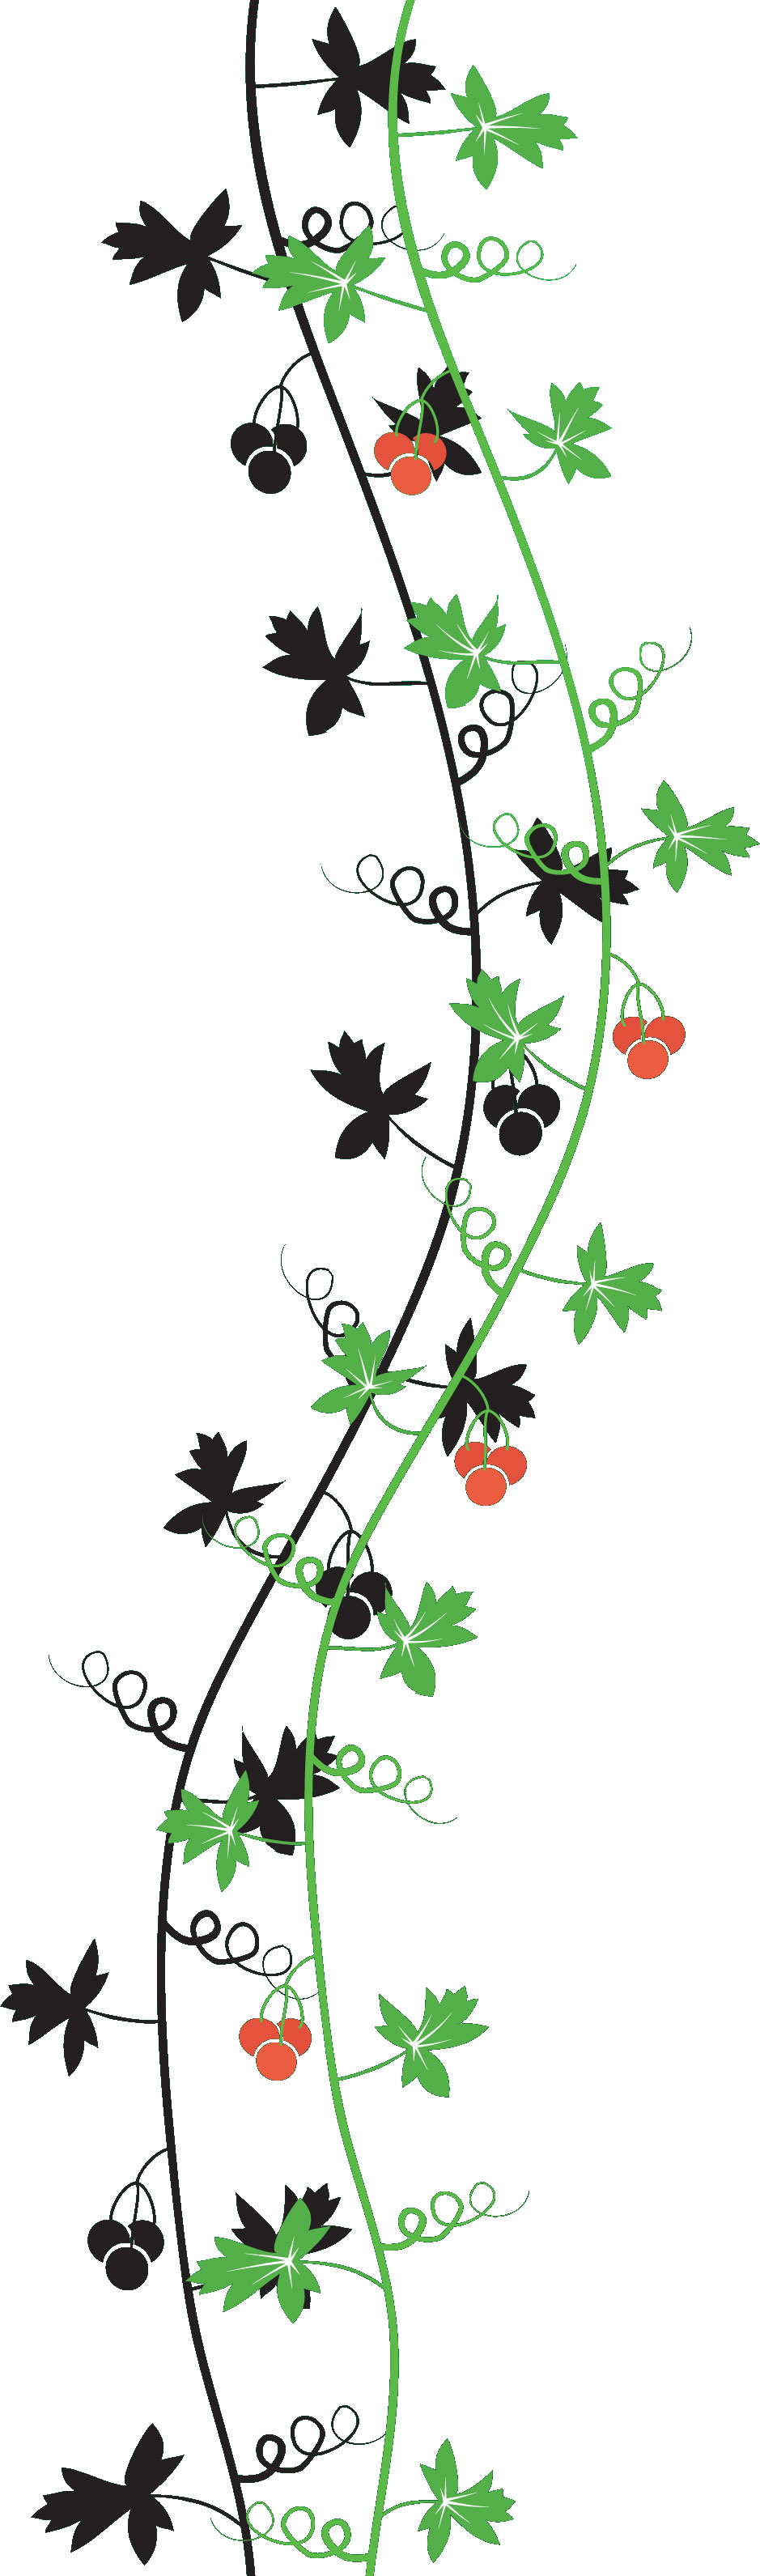 葉っぱ 草木のイラスト フリー素材 フレーム枠no 021 葉 蔦 蔓 赤い実